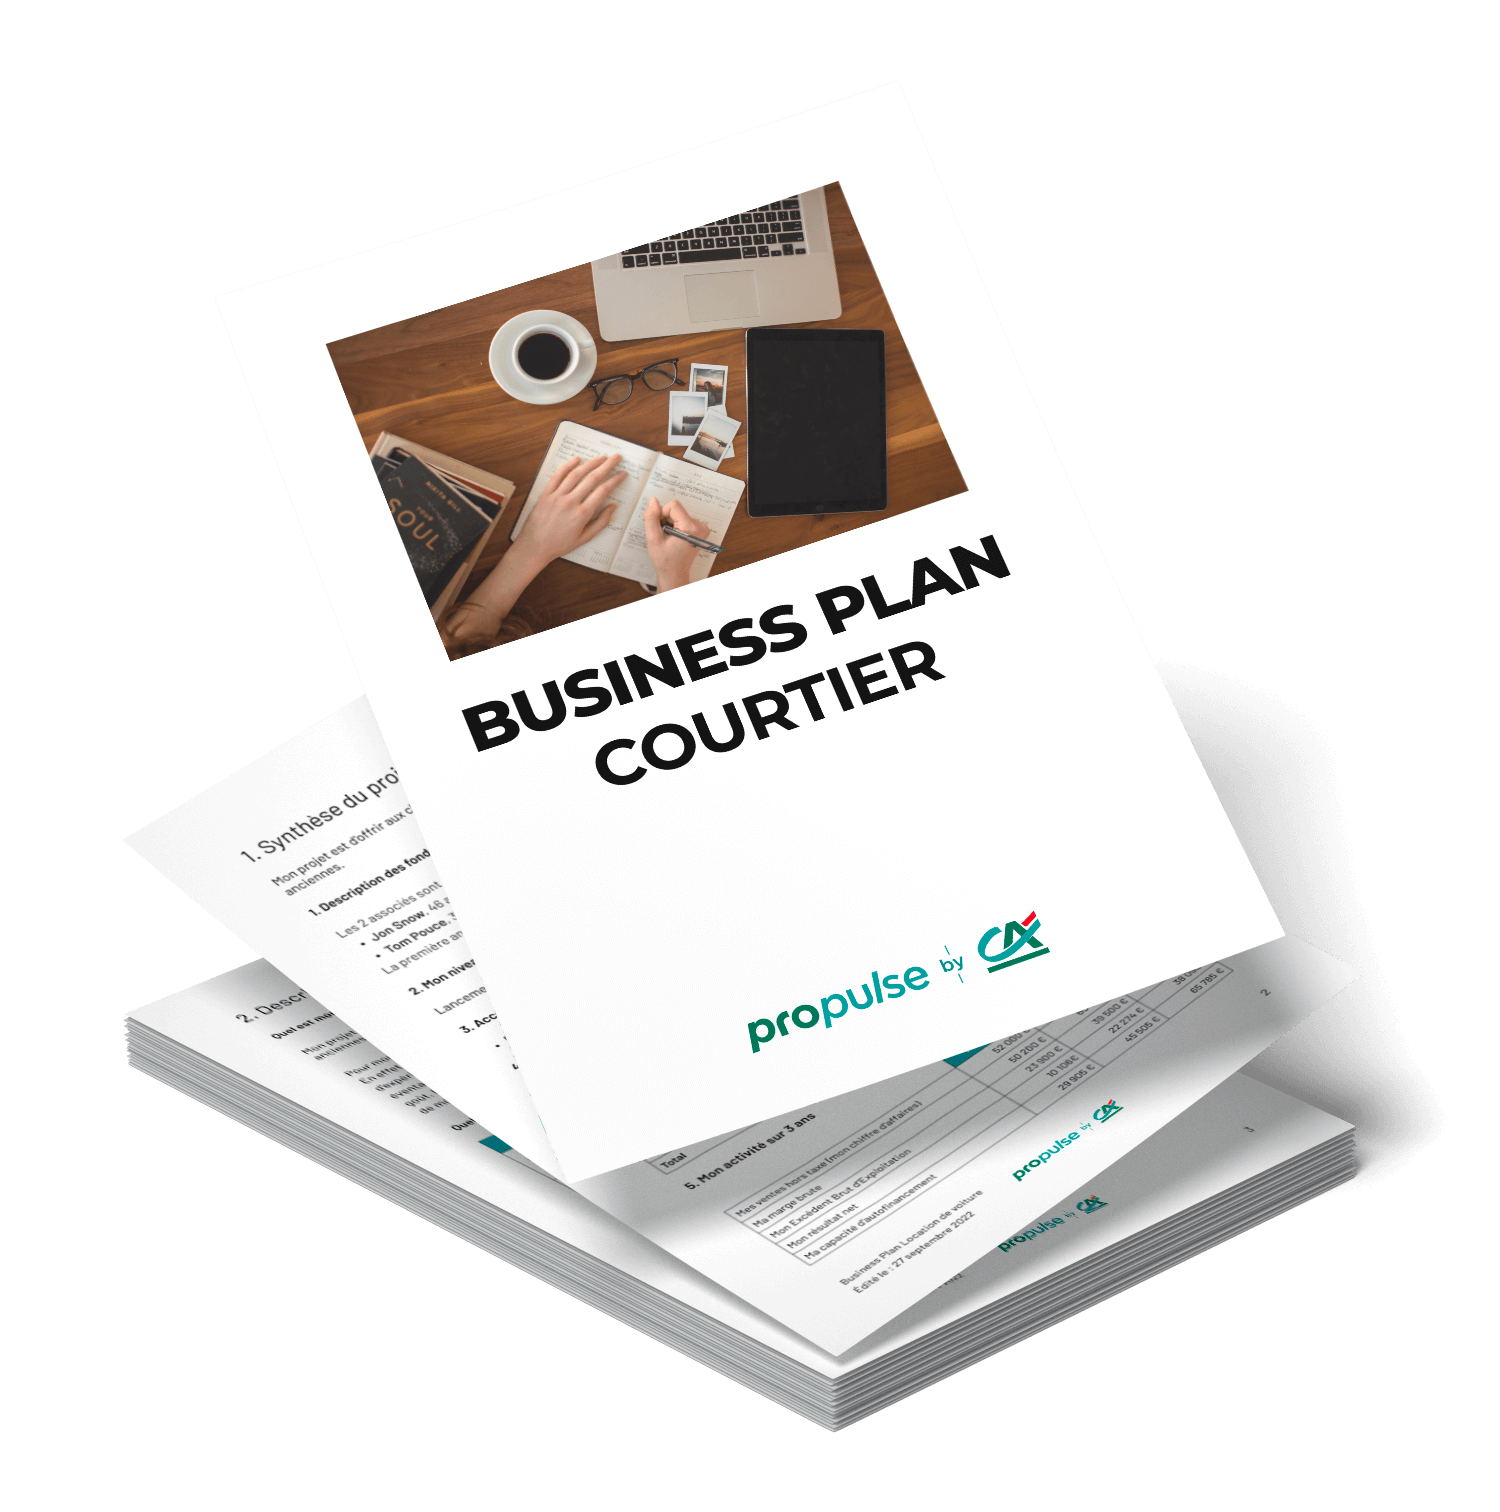 business plan courtier en assurance